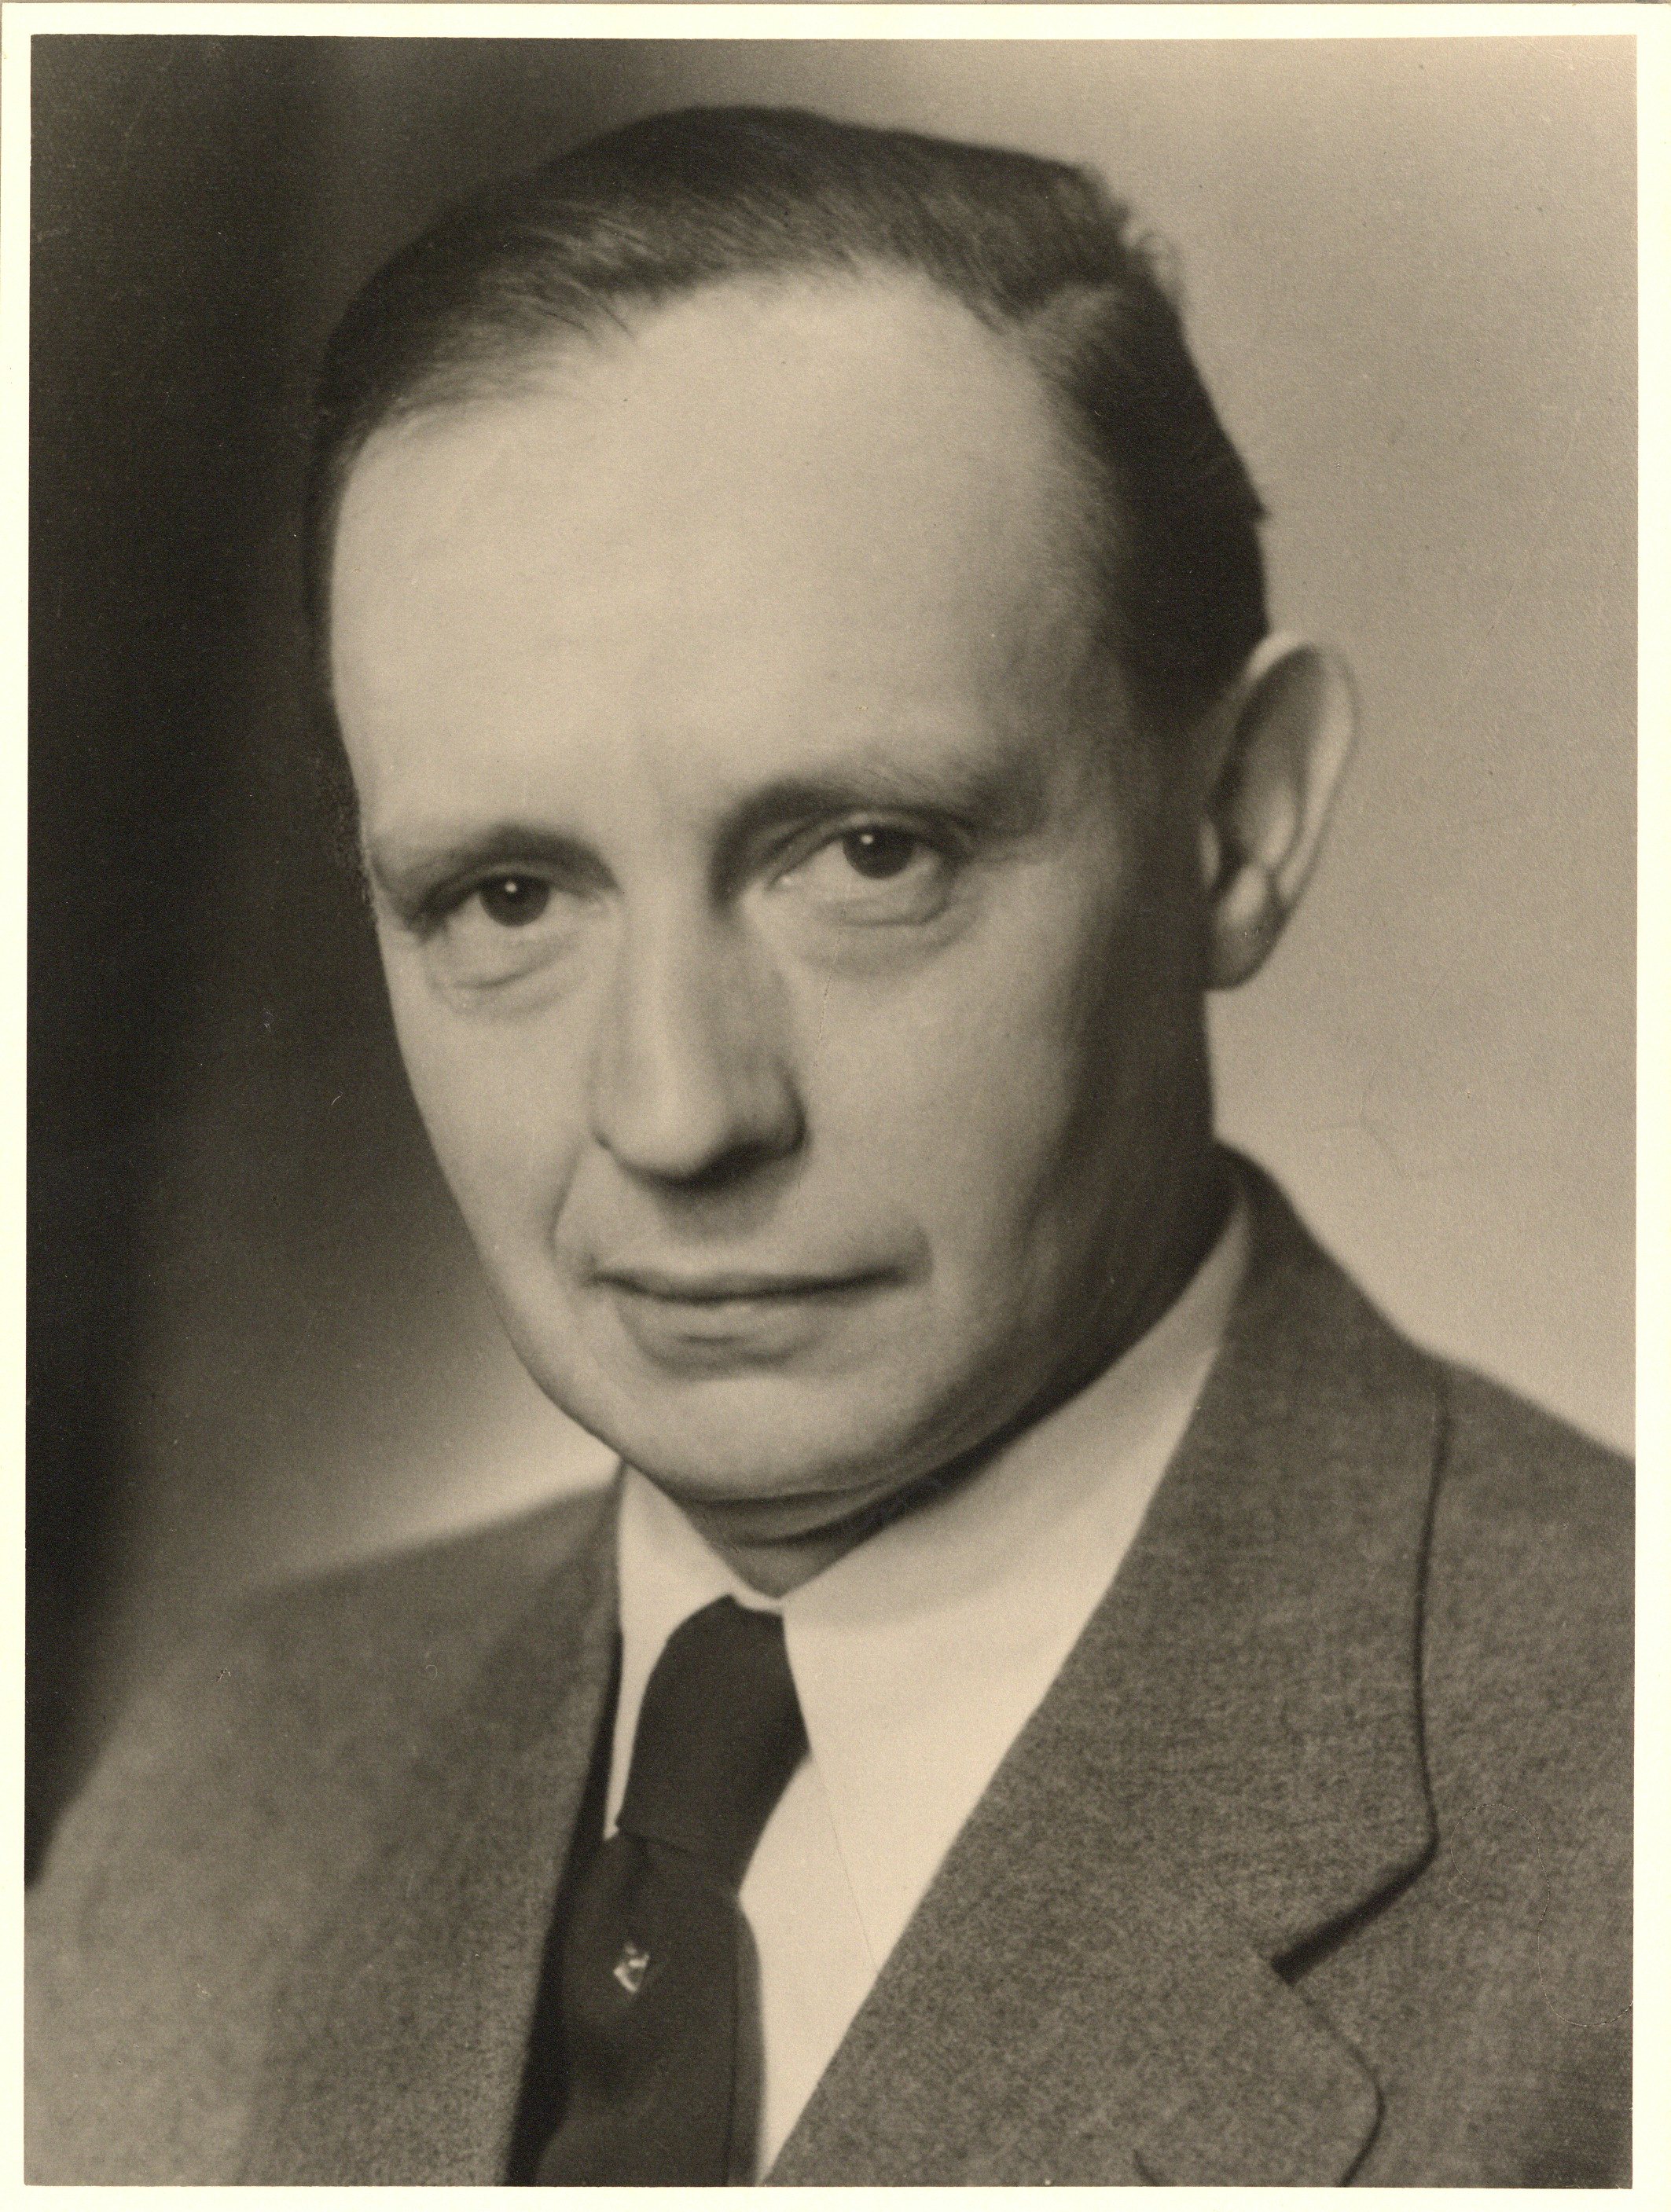 Martin Robert Hermann Ernst Tegtmeyer